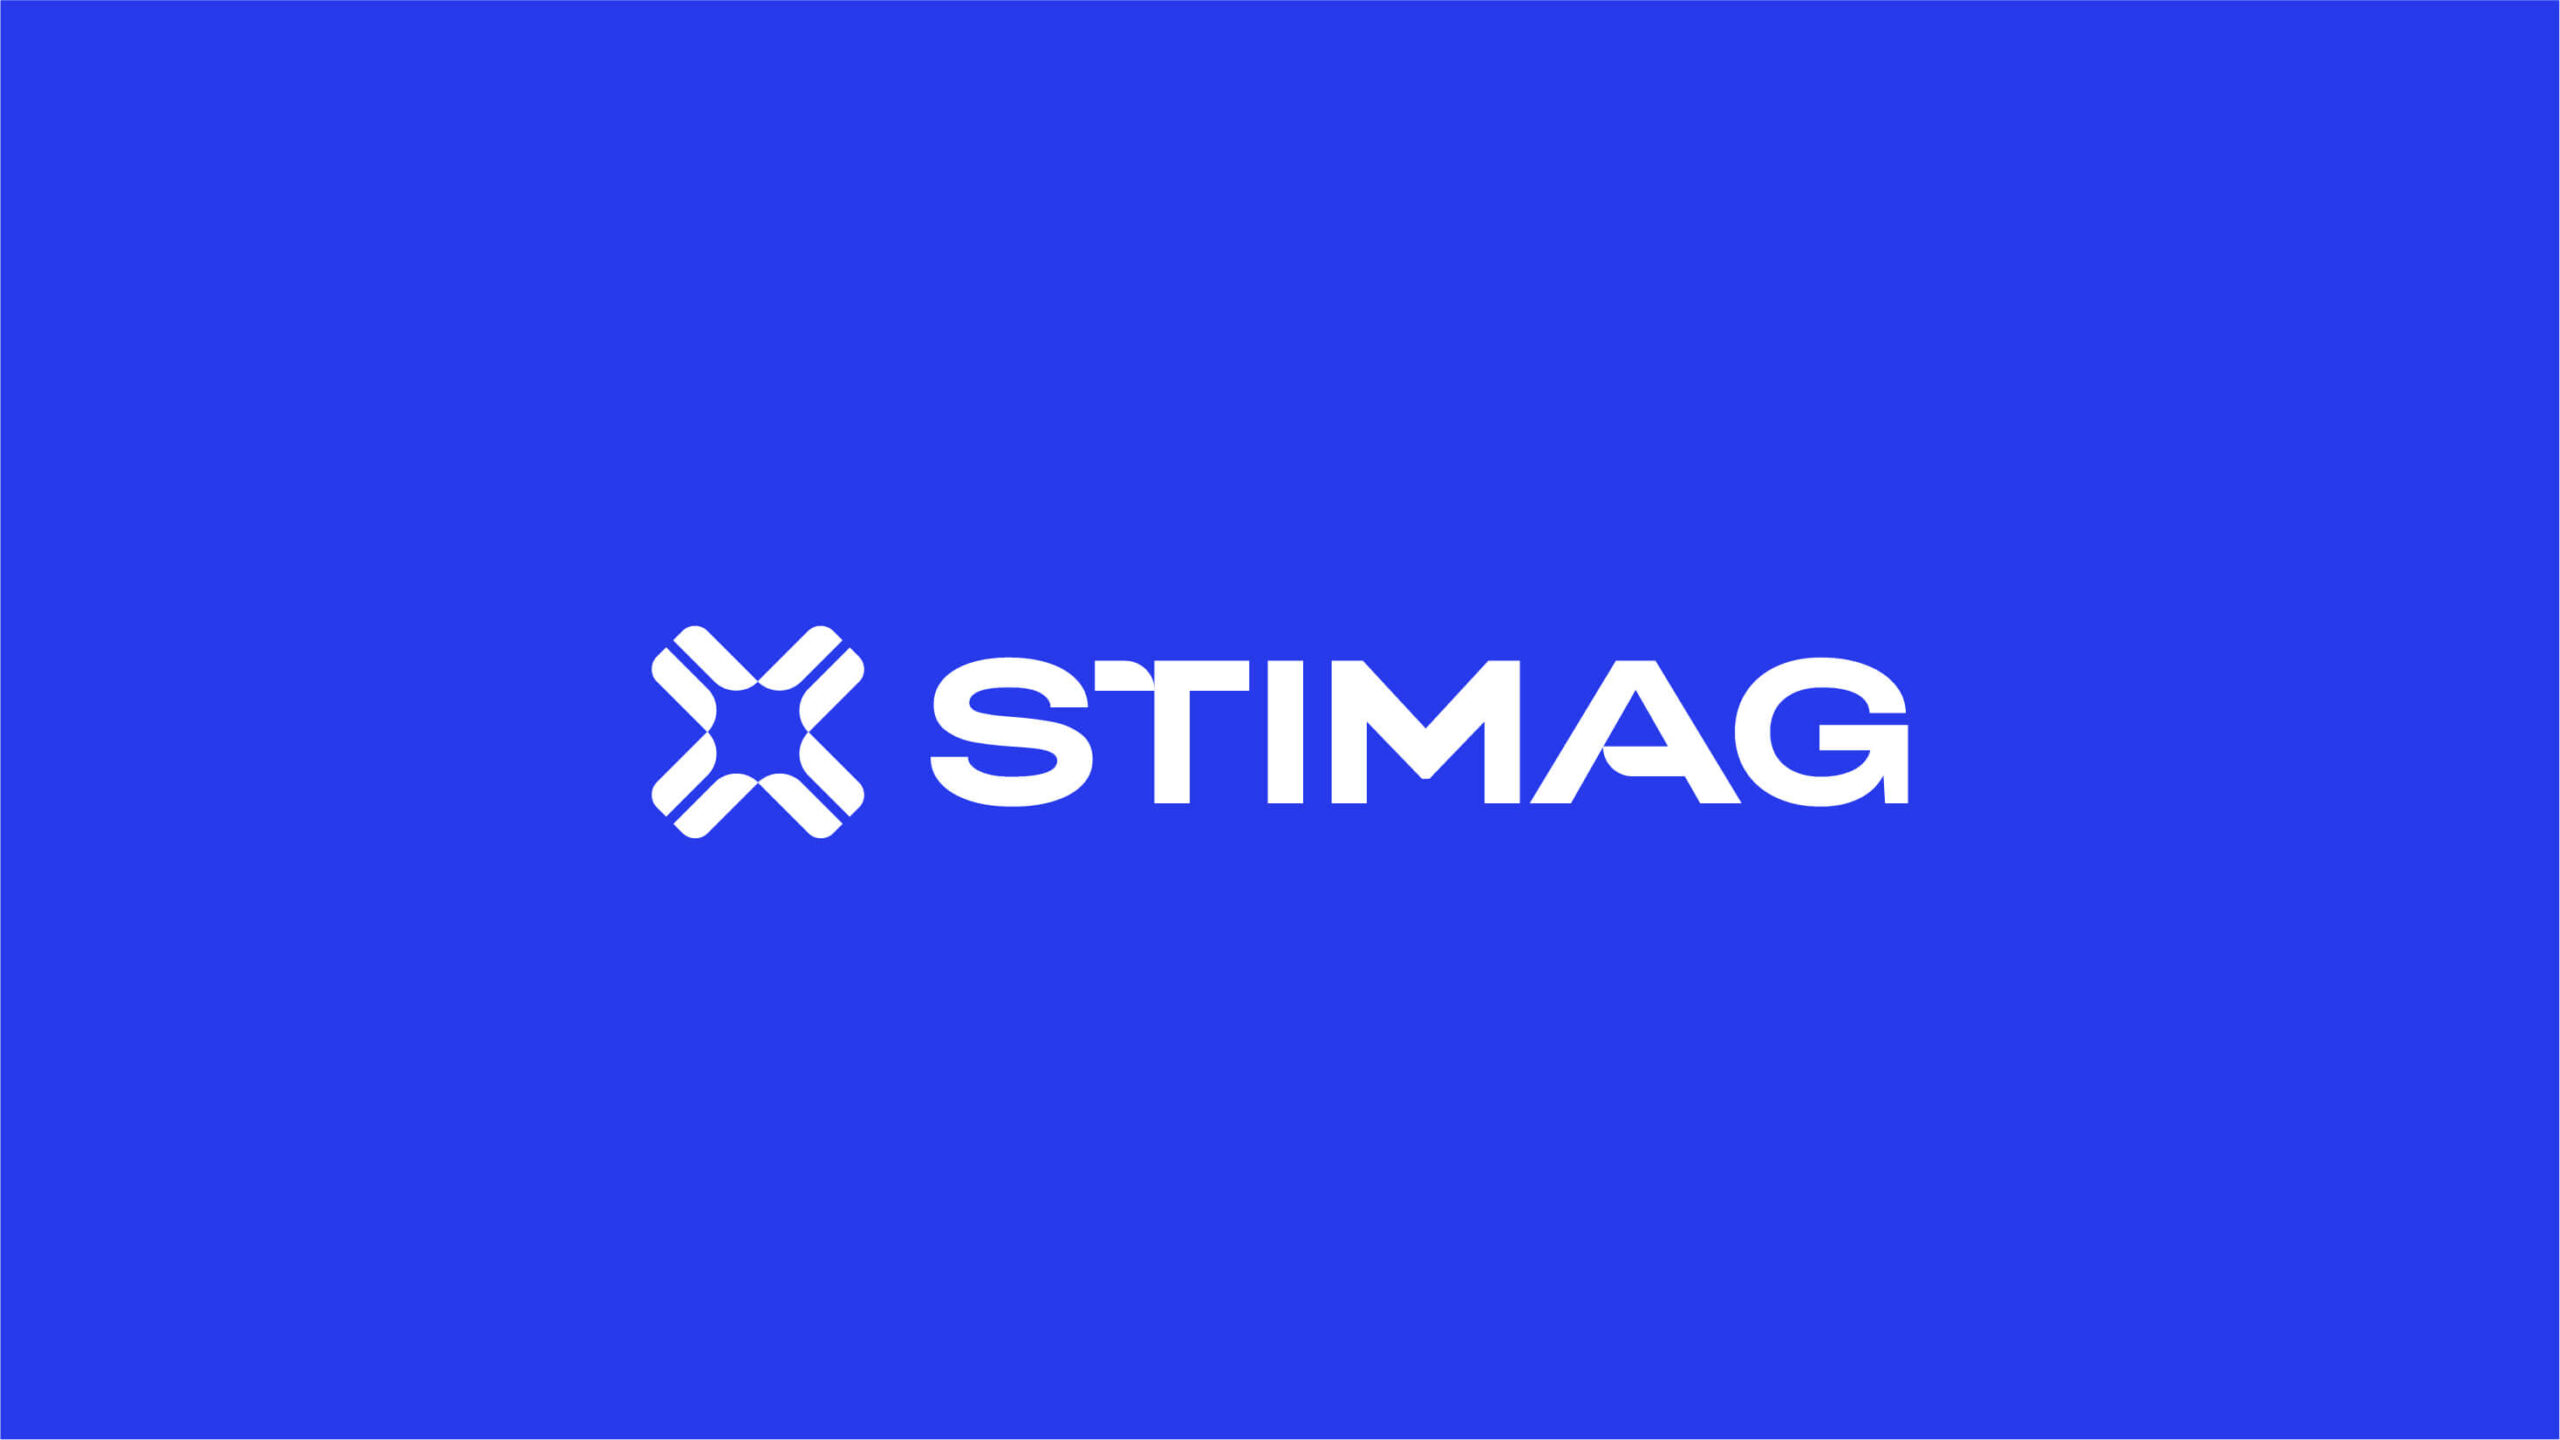 Stimag-website-case-01-13